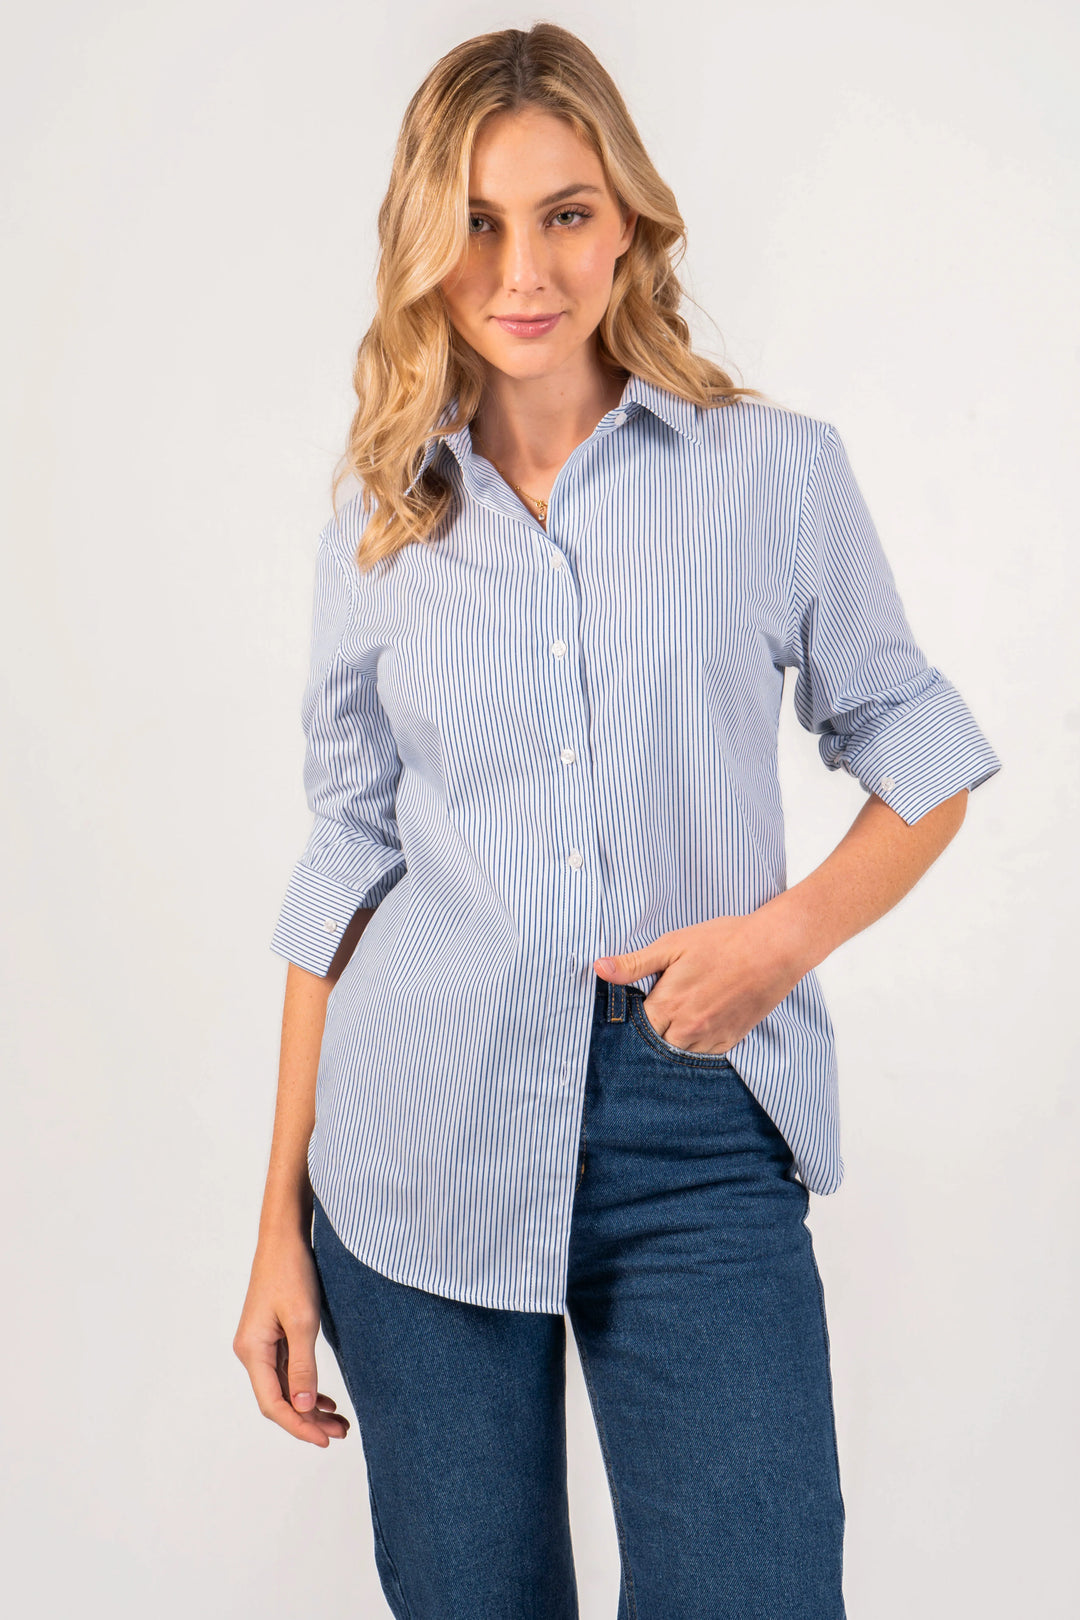 Camisa oversized para mujer de rayas, azul claro, manga larga.